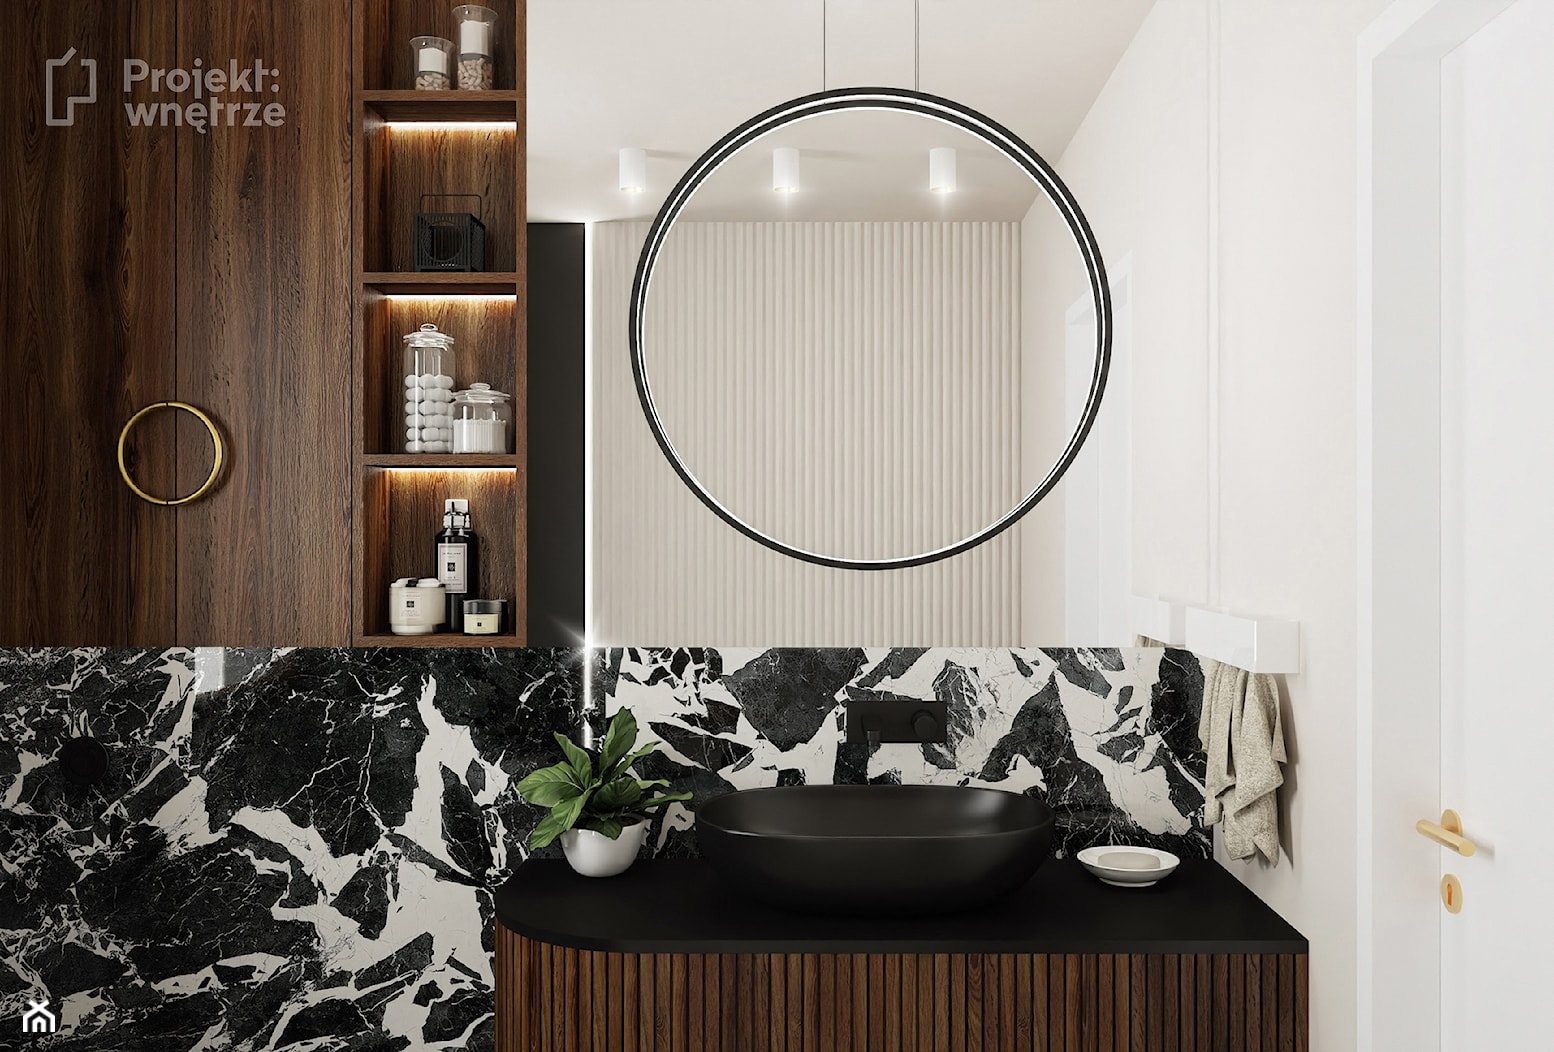 Mała łazienka z wanną z oknem styl nowoczesny minimalistyczny z WC beżowa czarna umywalka lamele okrągłe lustro oświetlenie punktowe ledowe czarna armatura - zdjęcie od PROJEKT: WNĘTRZE - Homebook